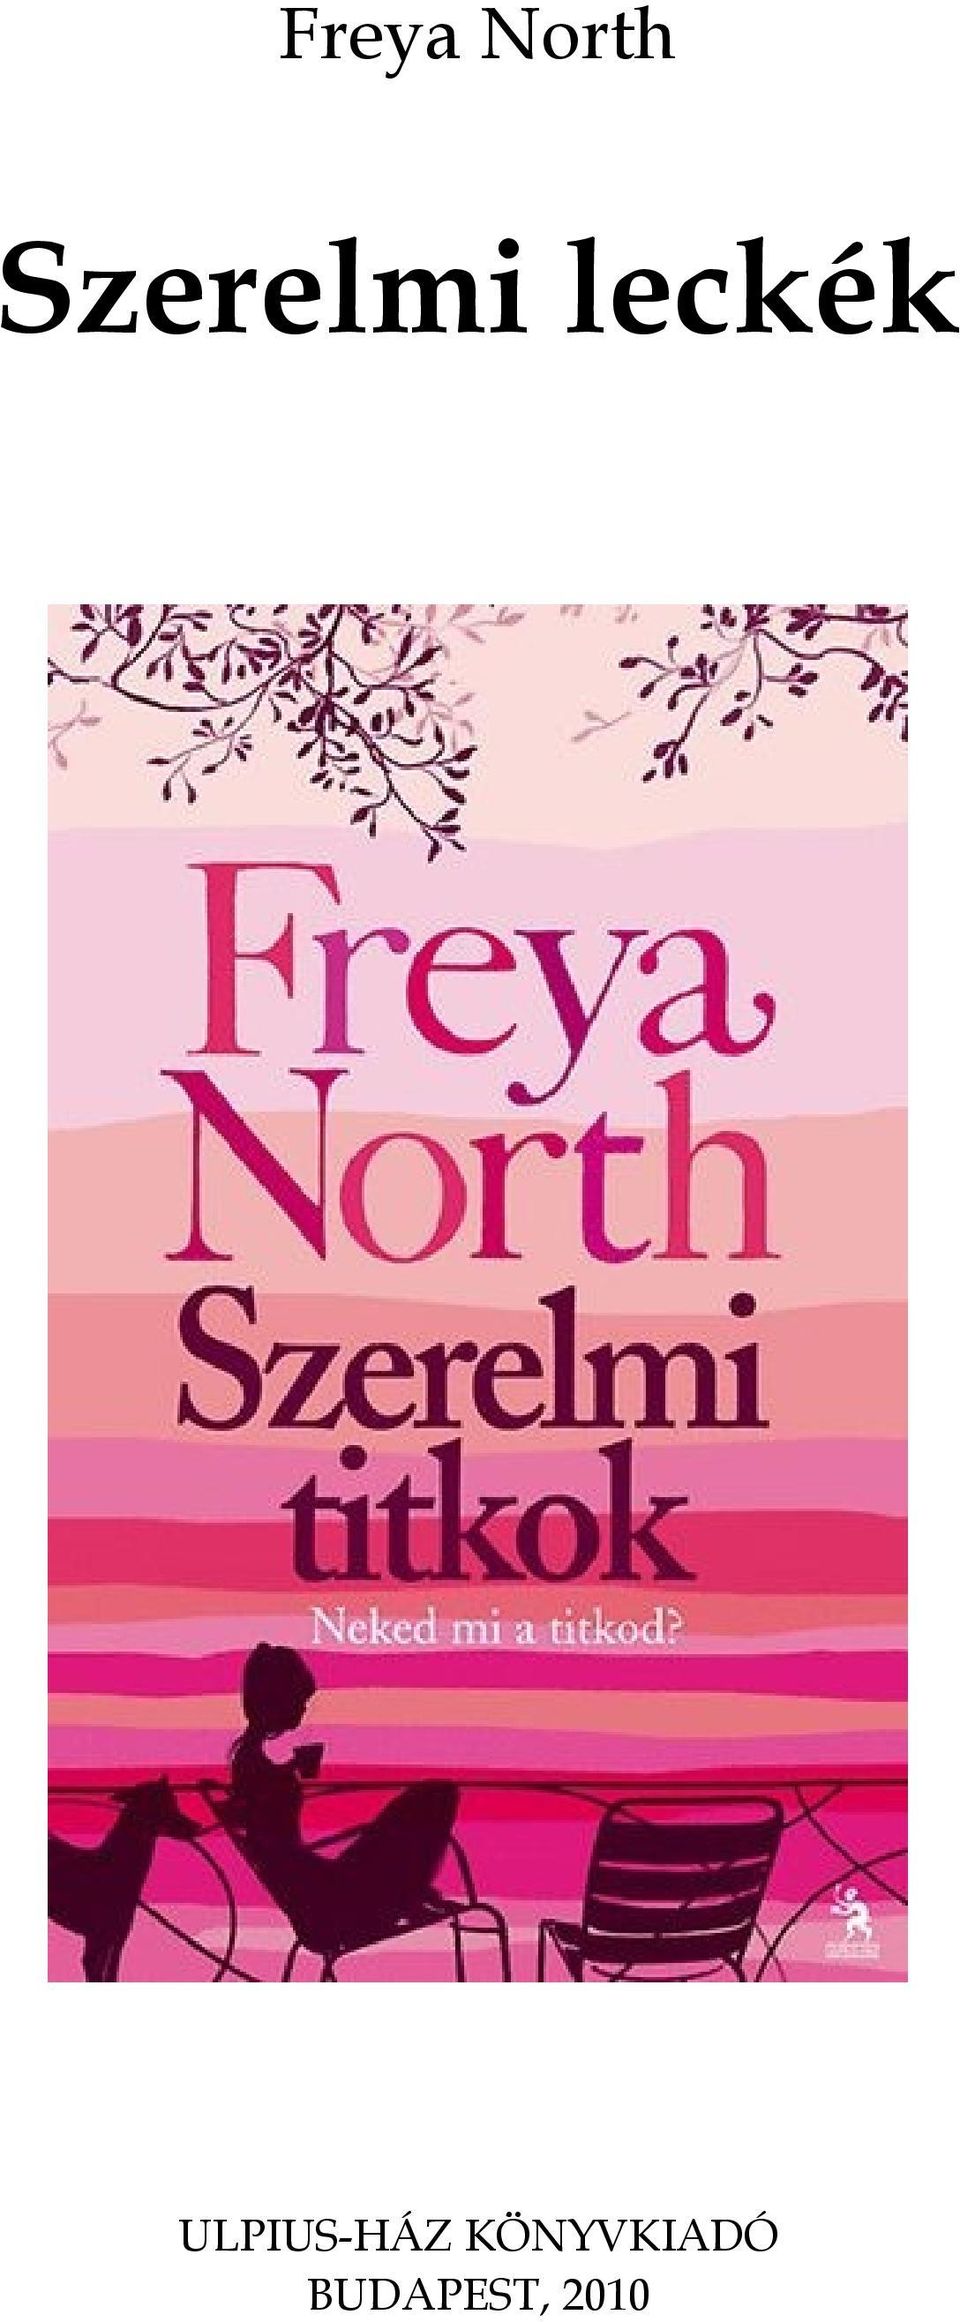 Freya North. Szerelmi leckék - PDF Ingyenes letöltés